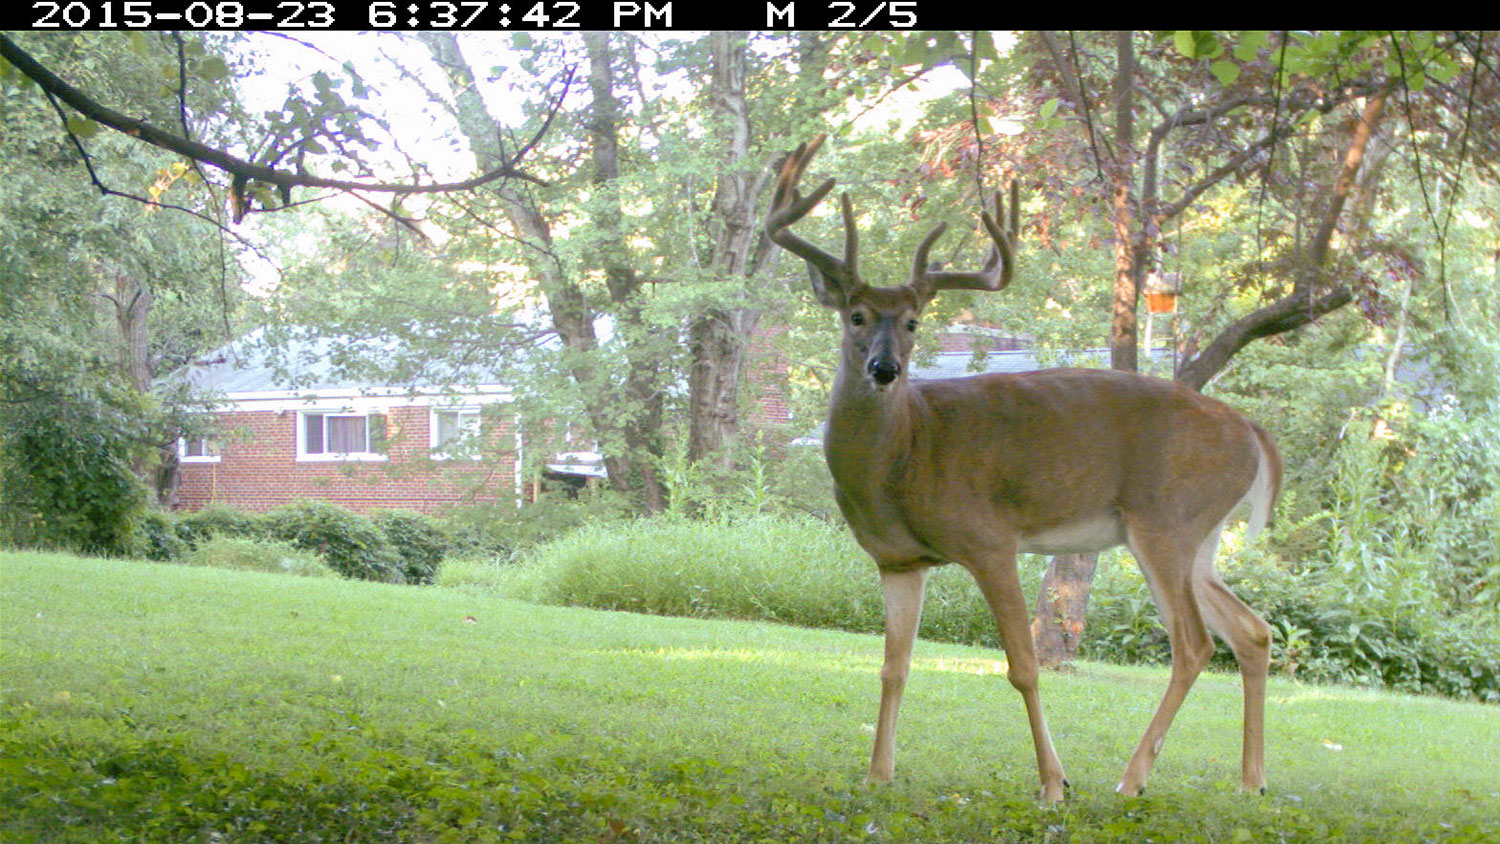 鹿面向相机，在背景中可以看到一个家。